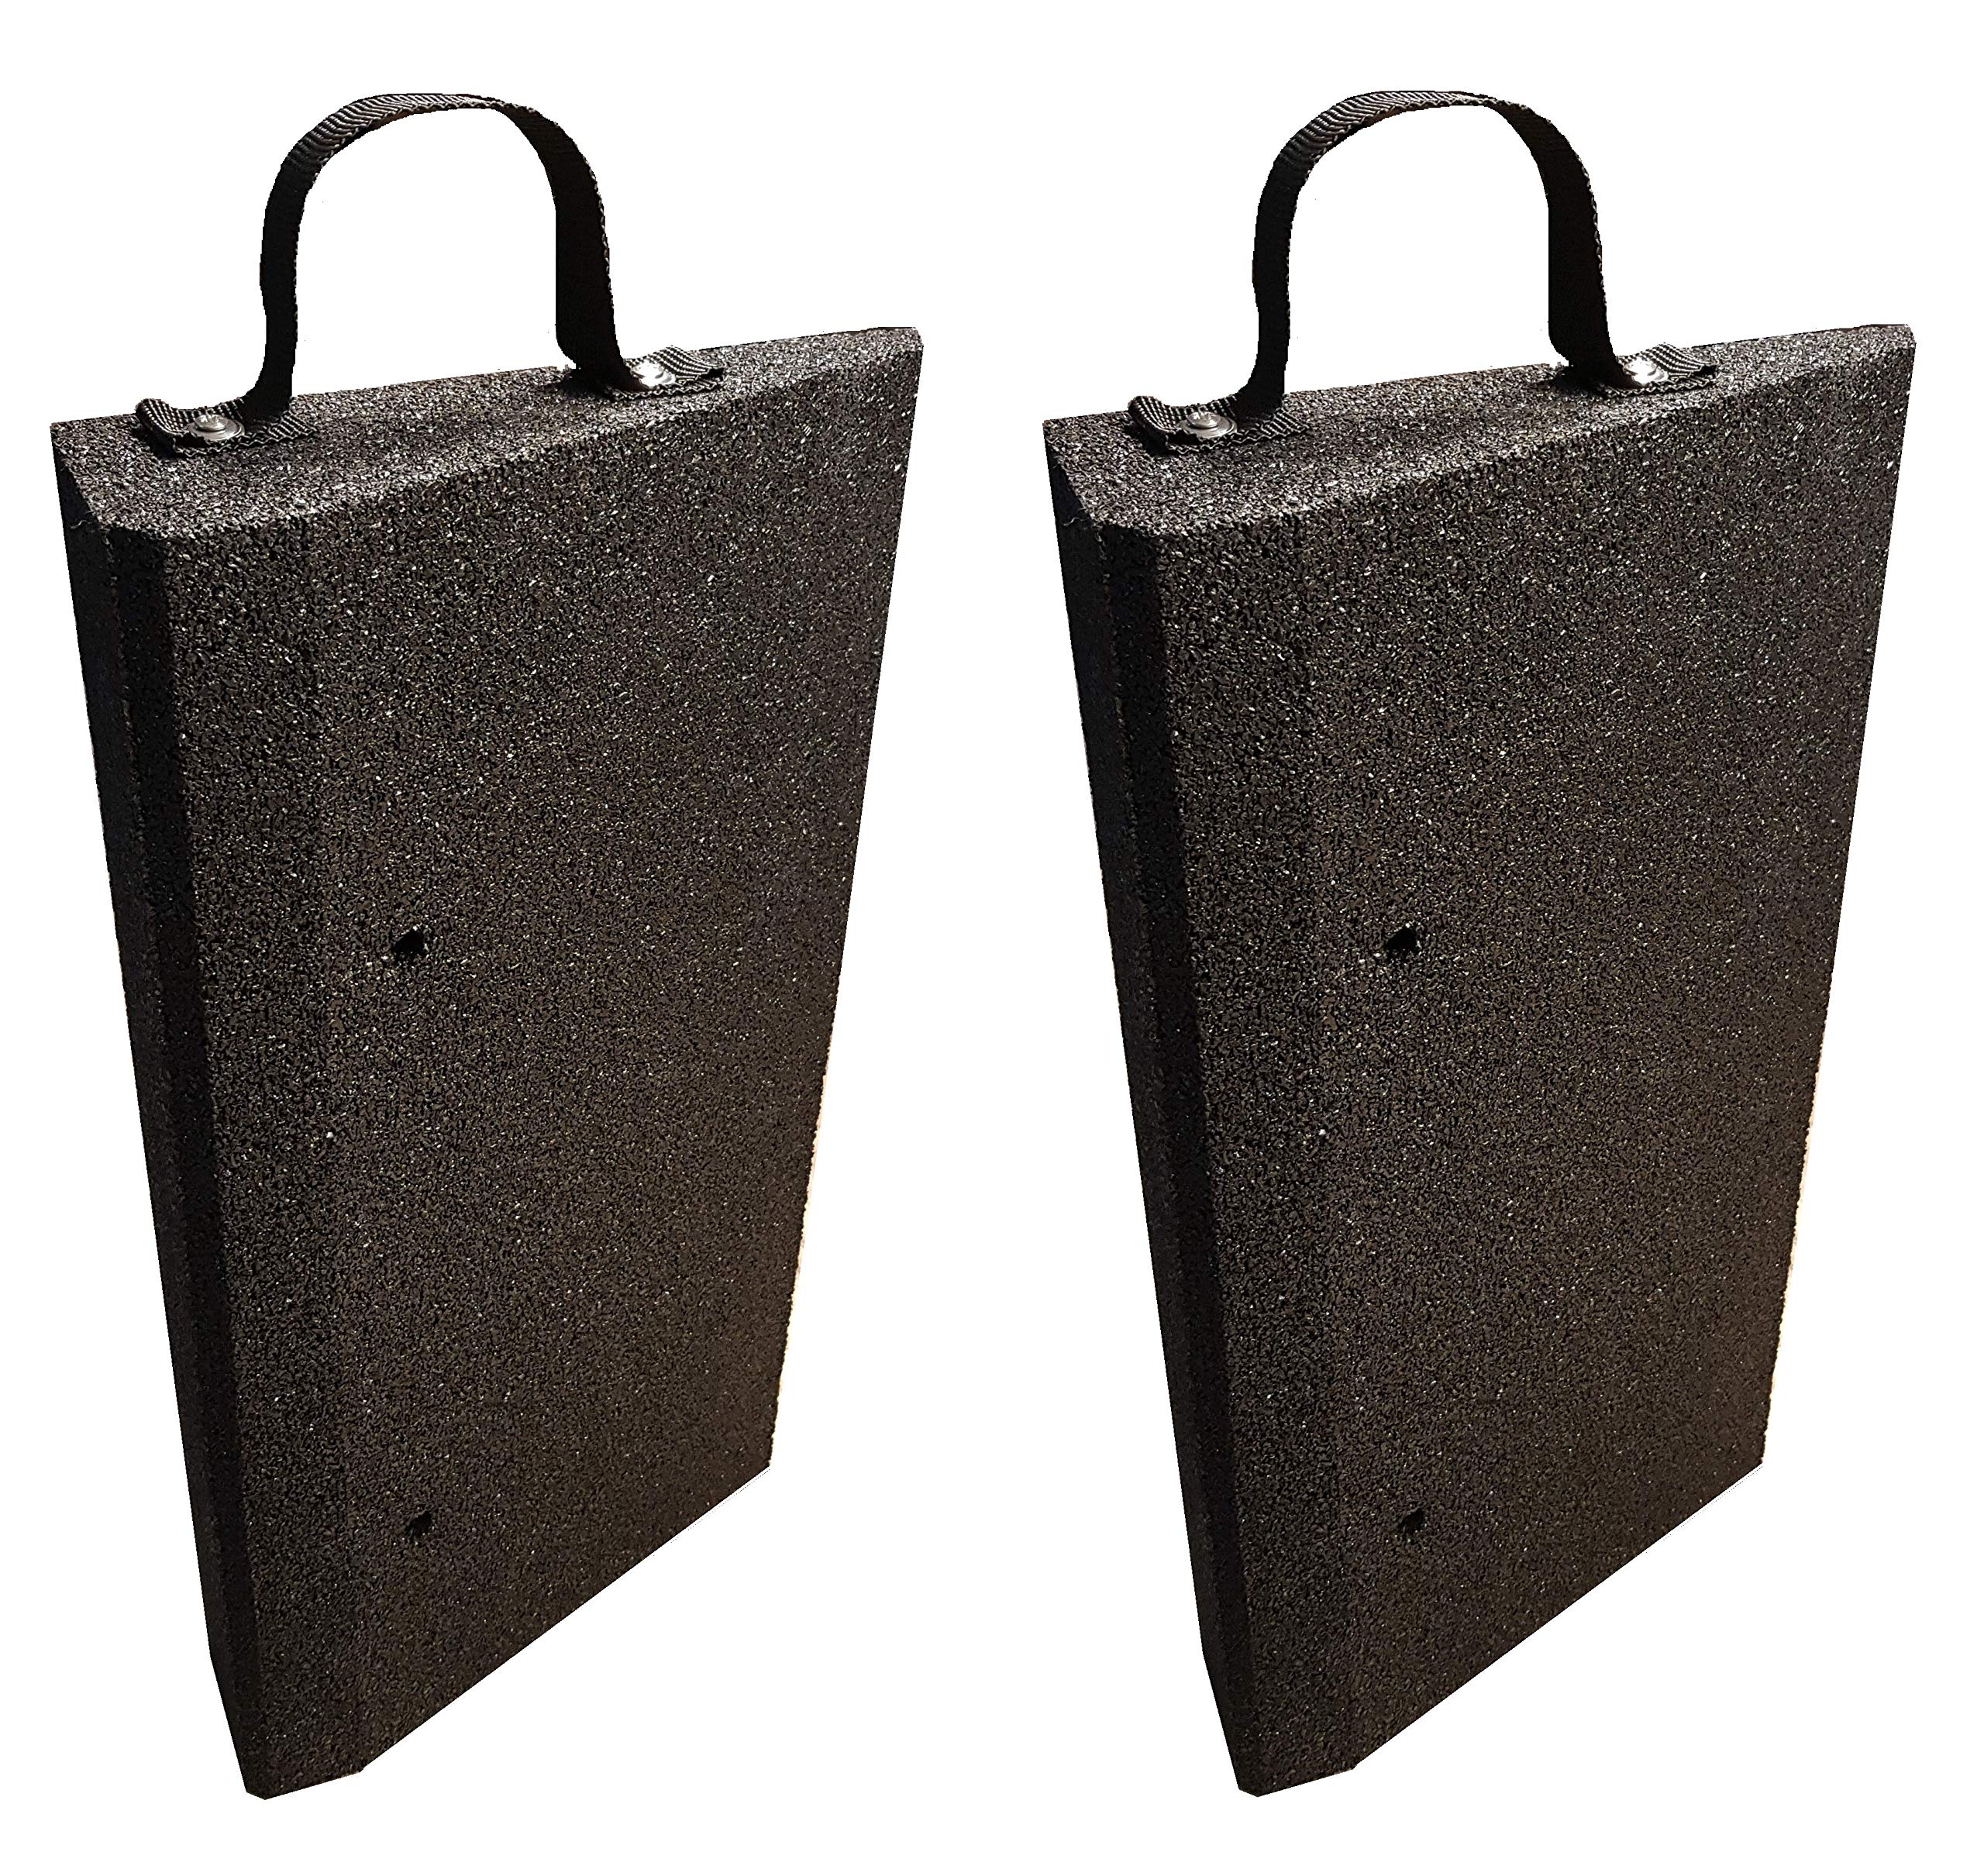 bepco Bordsteinkanten-Rampe-Set (2 Stück) + Griff-Schlaufen, LxBxH: 50 x 25 x 5 cm aus Gummi (schwarz) Auffahrrampe,Türschwellenrampe, mit eingelagerten Unterlegscheiben zur Befestigung